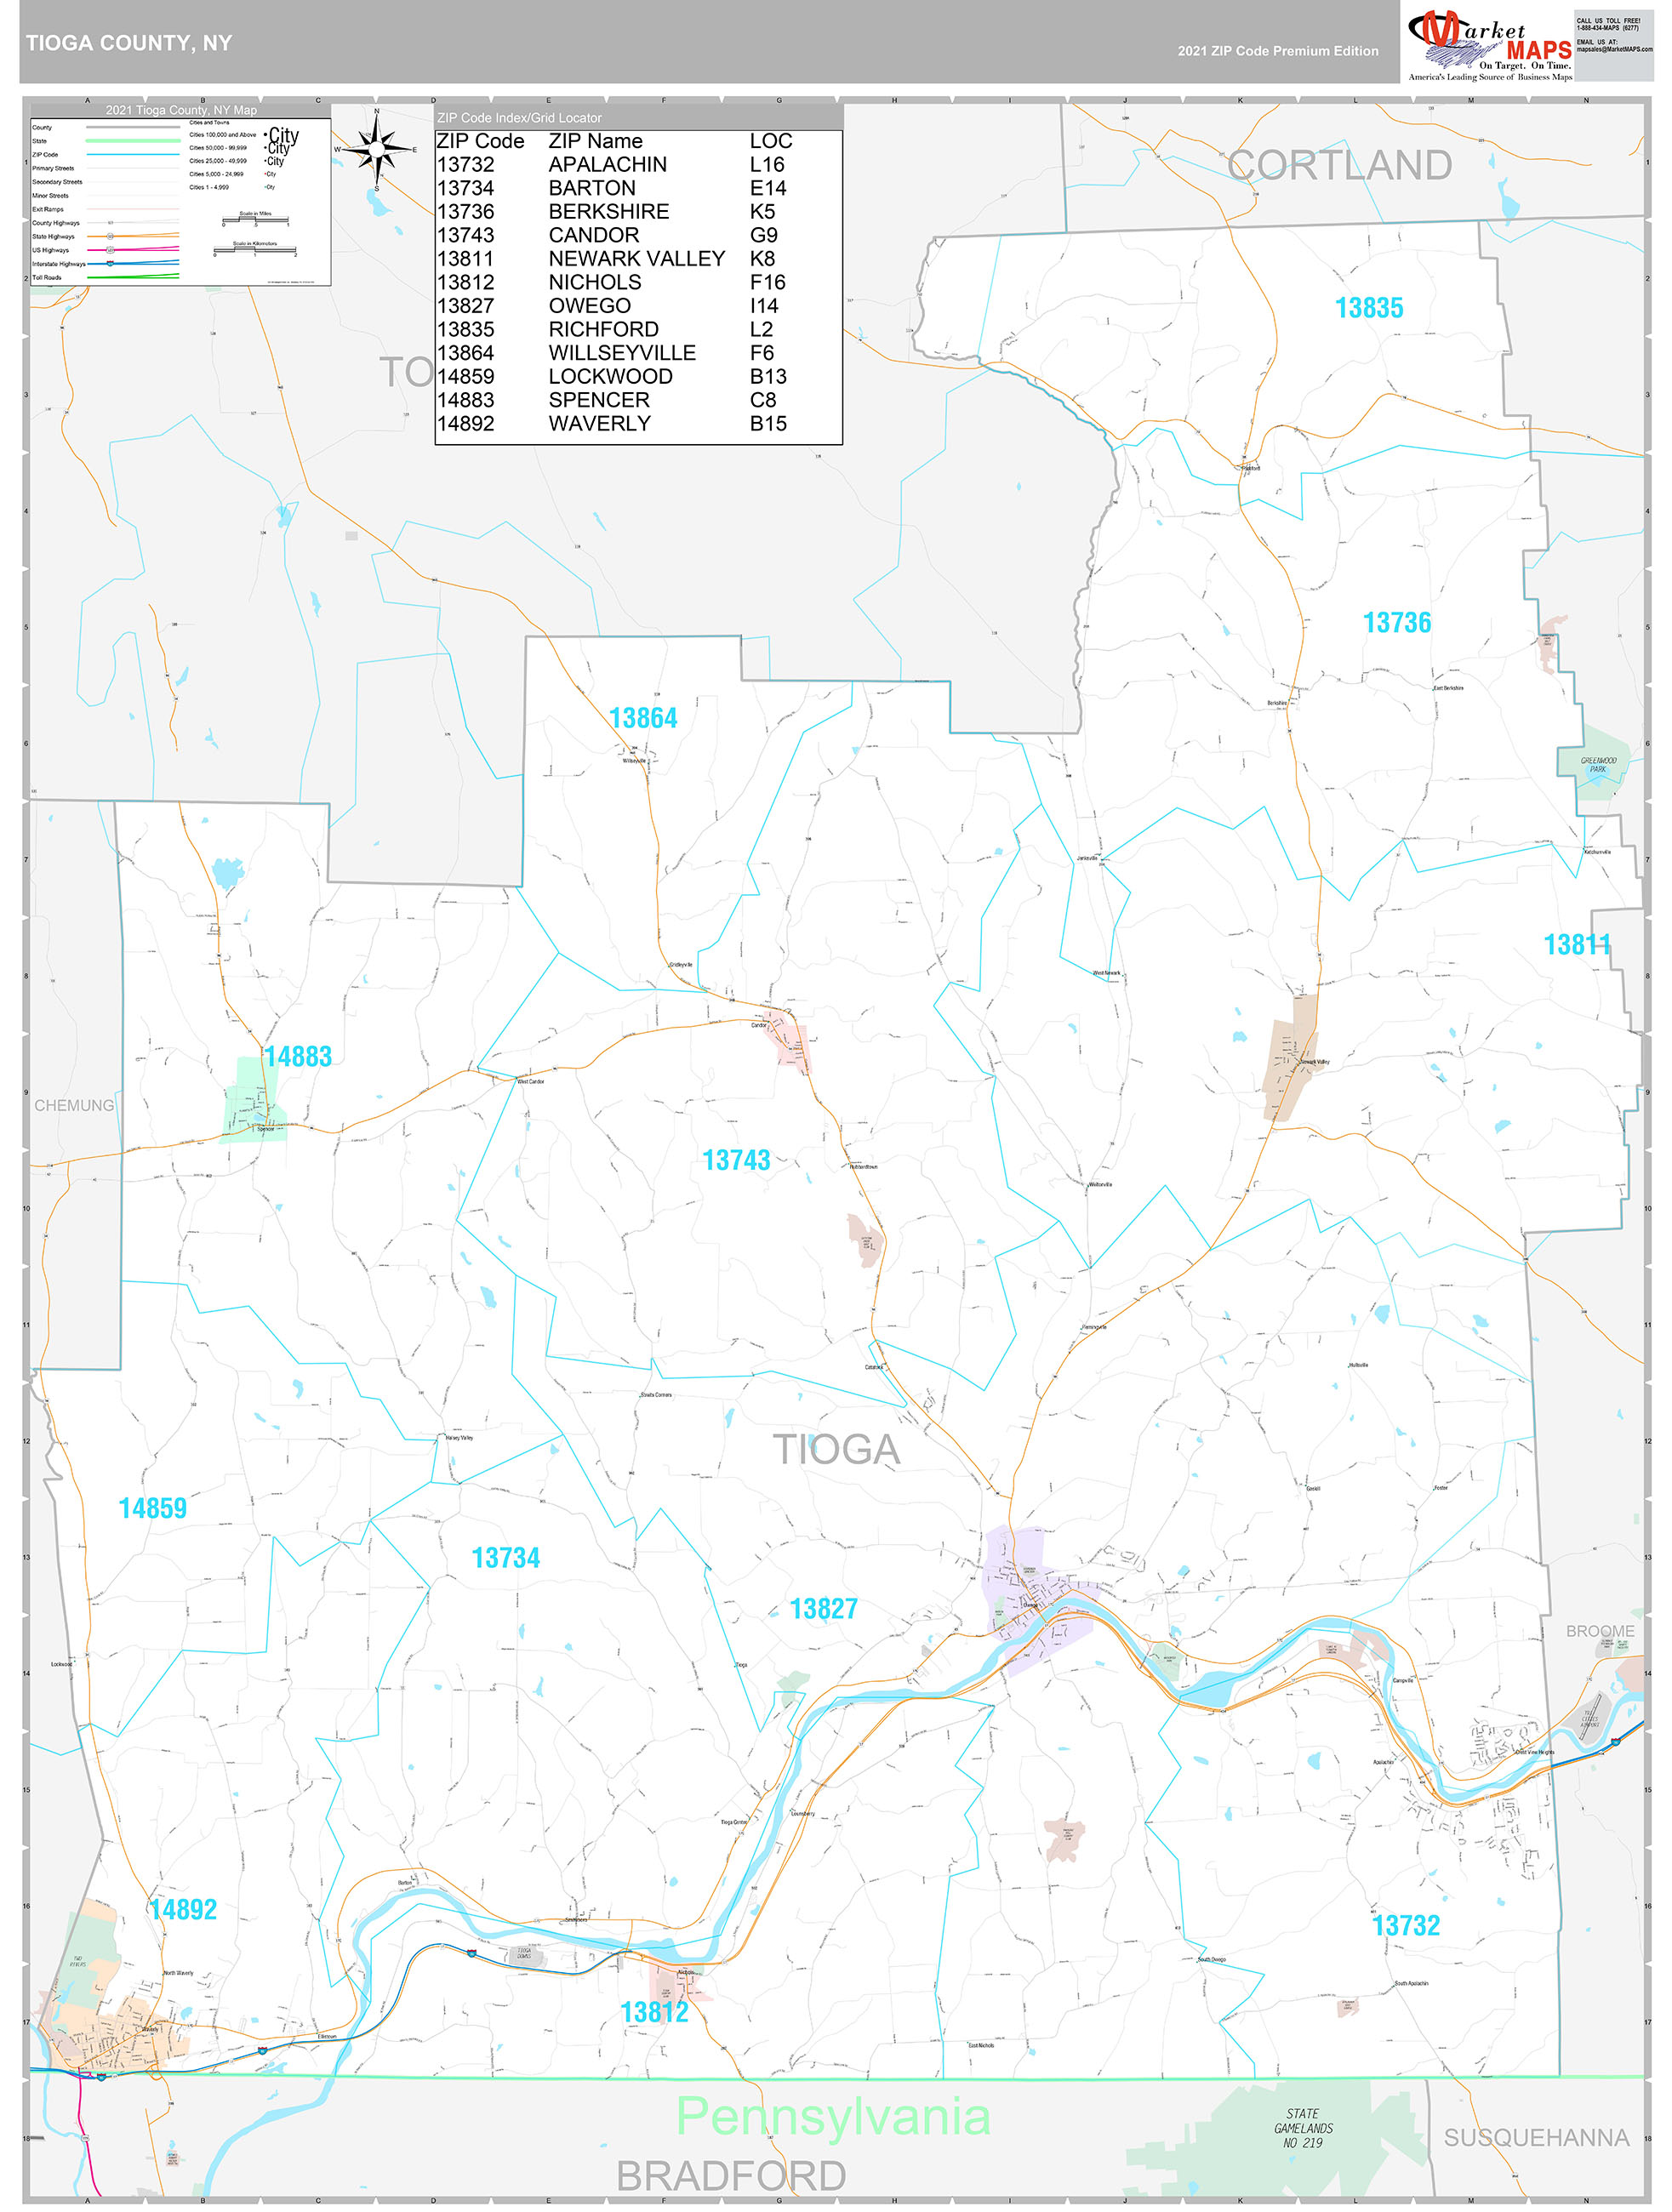 Tioga County, NY Wall Map Premium Style by MarketMAPS MapSales